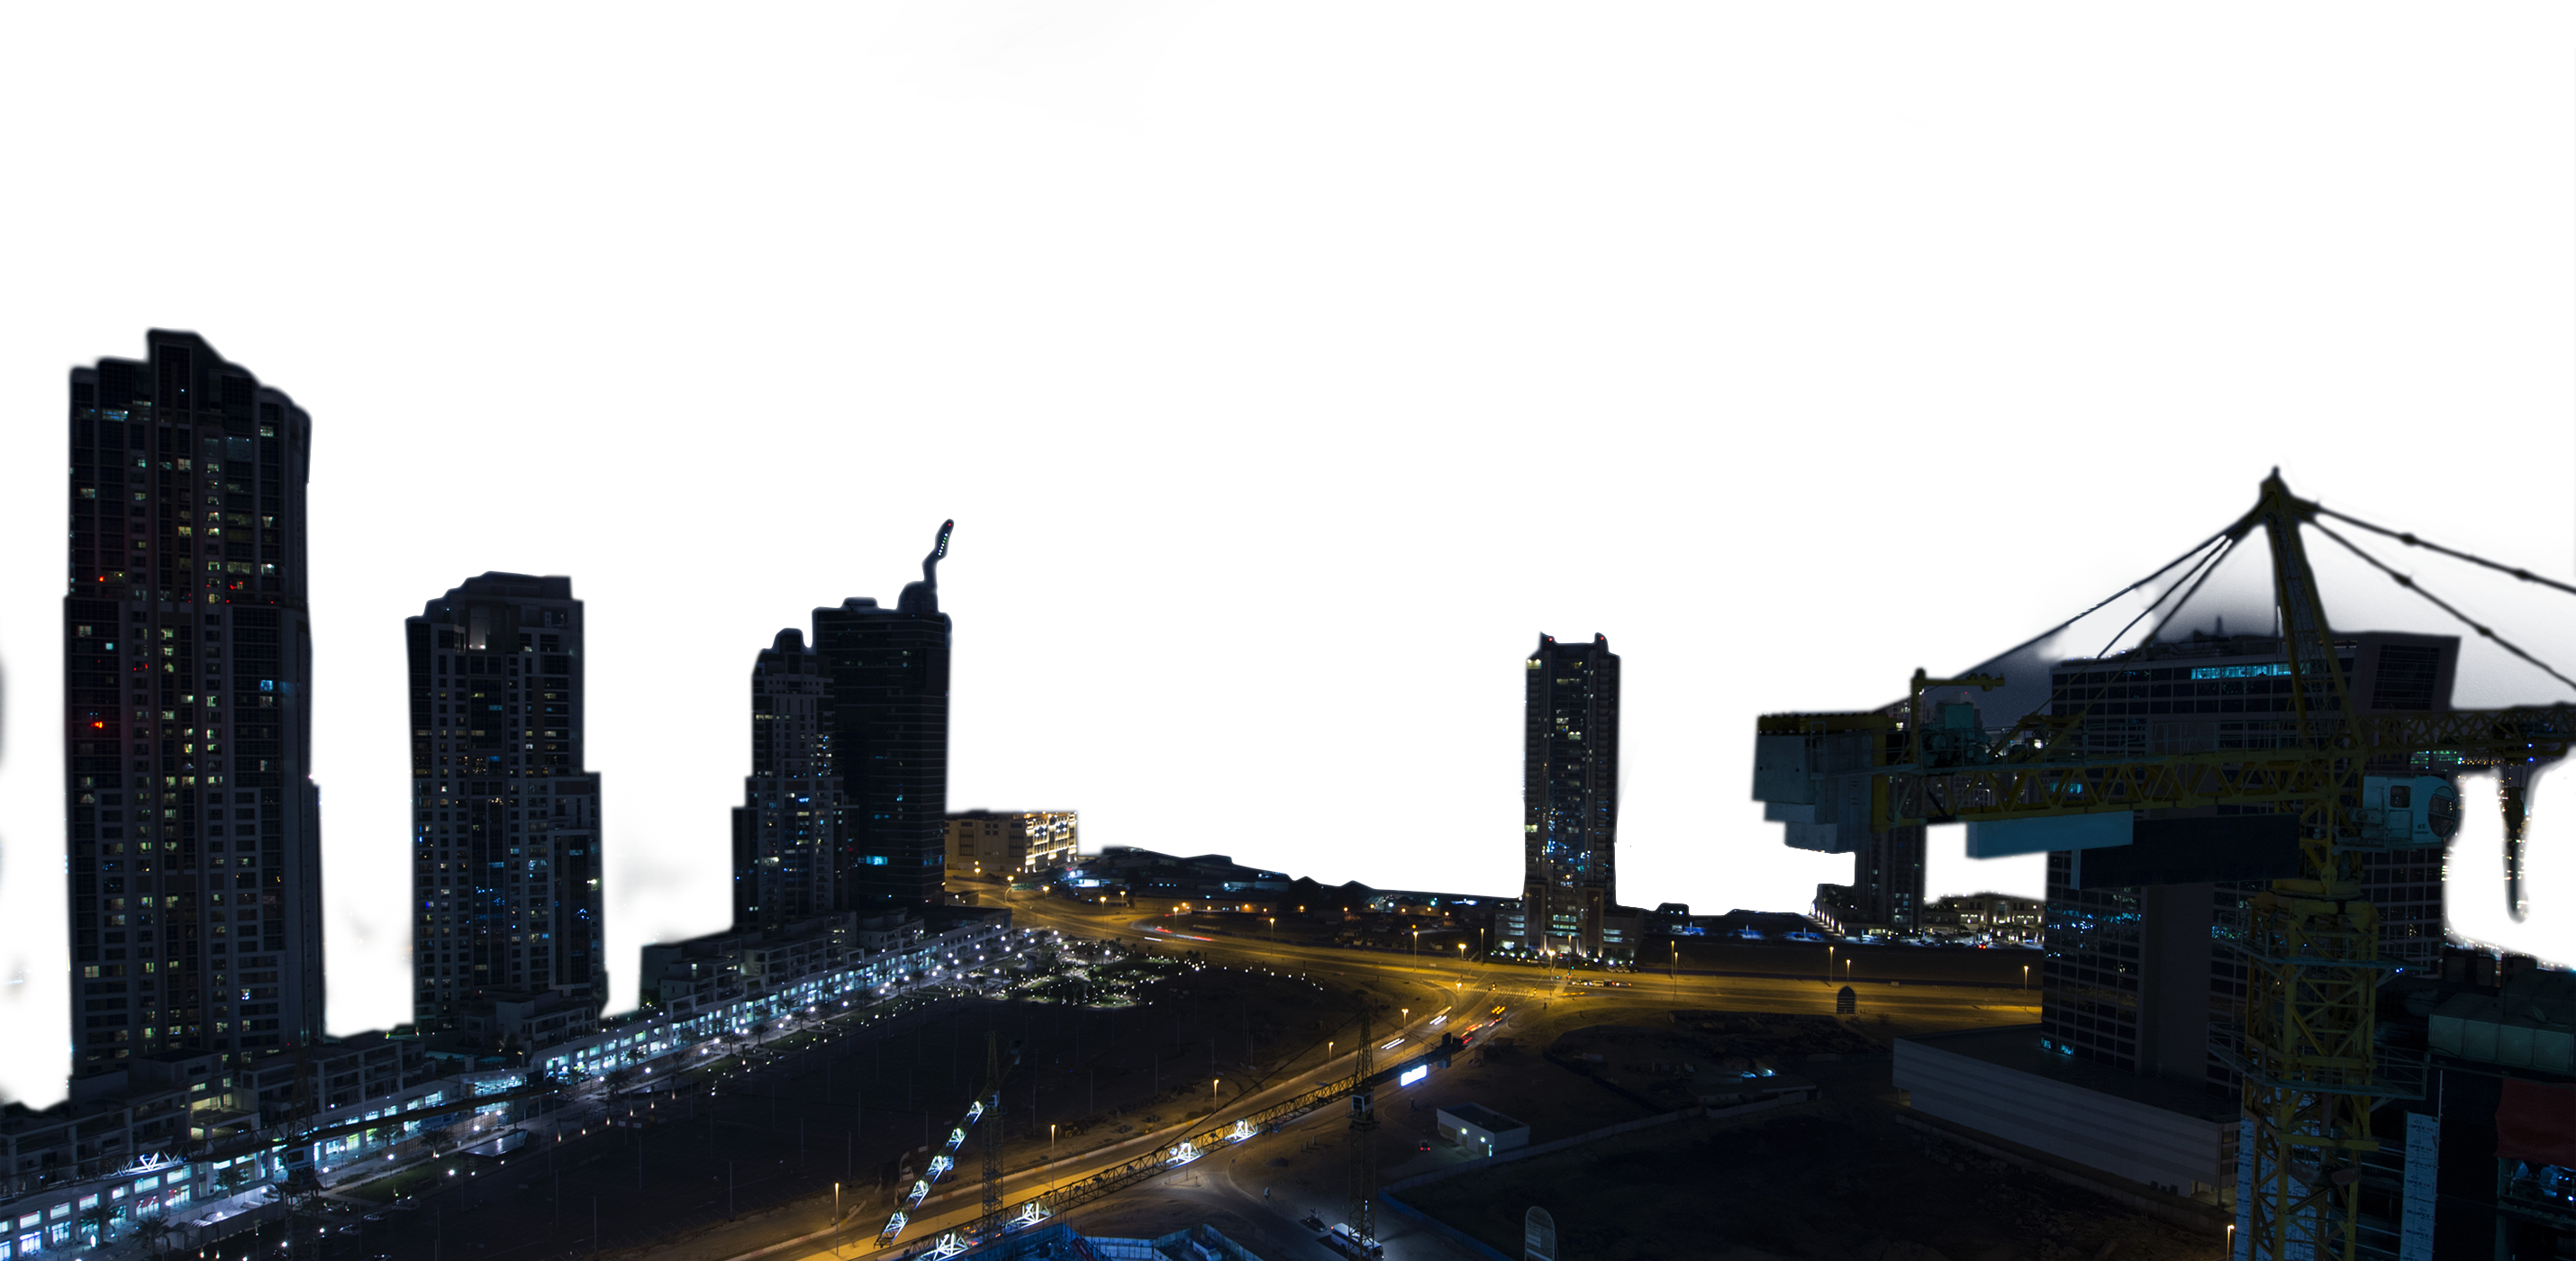 Dubai city foreground